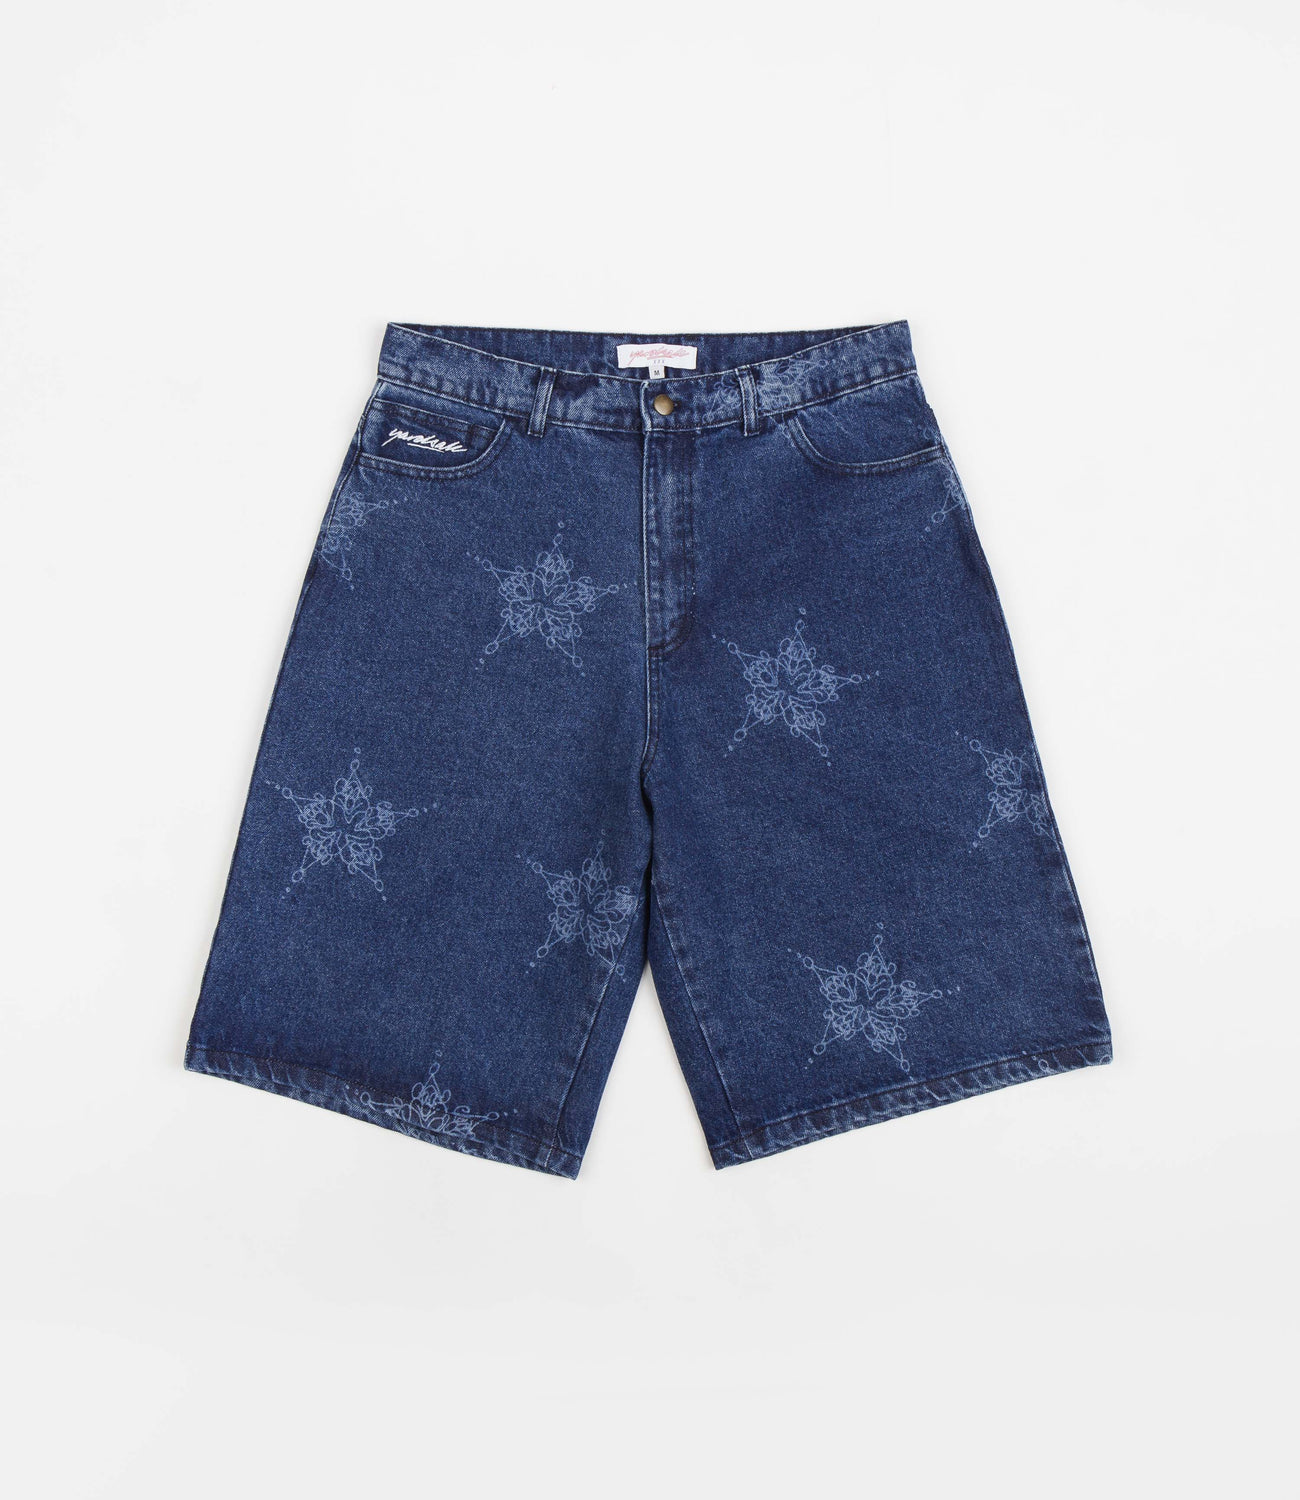 Yardsale Dingus Star Shorts - Denim | Flatspot